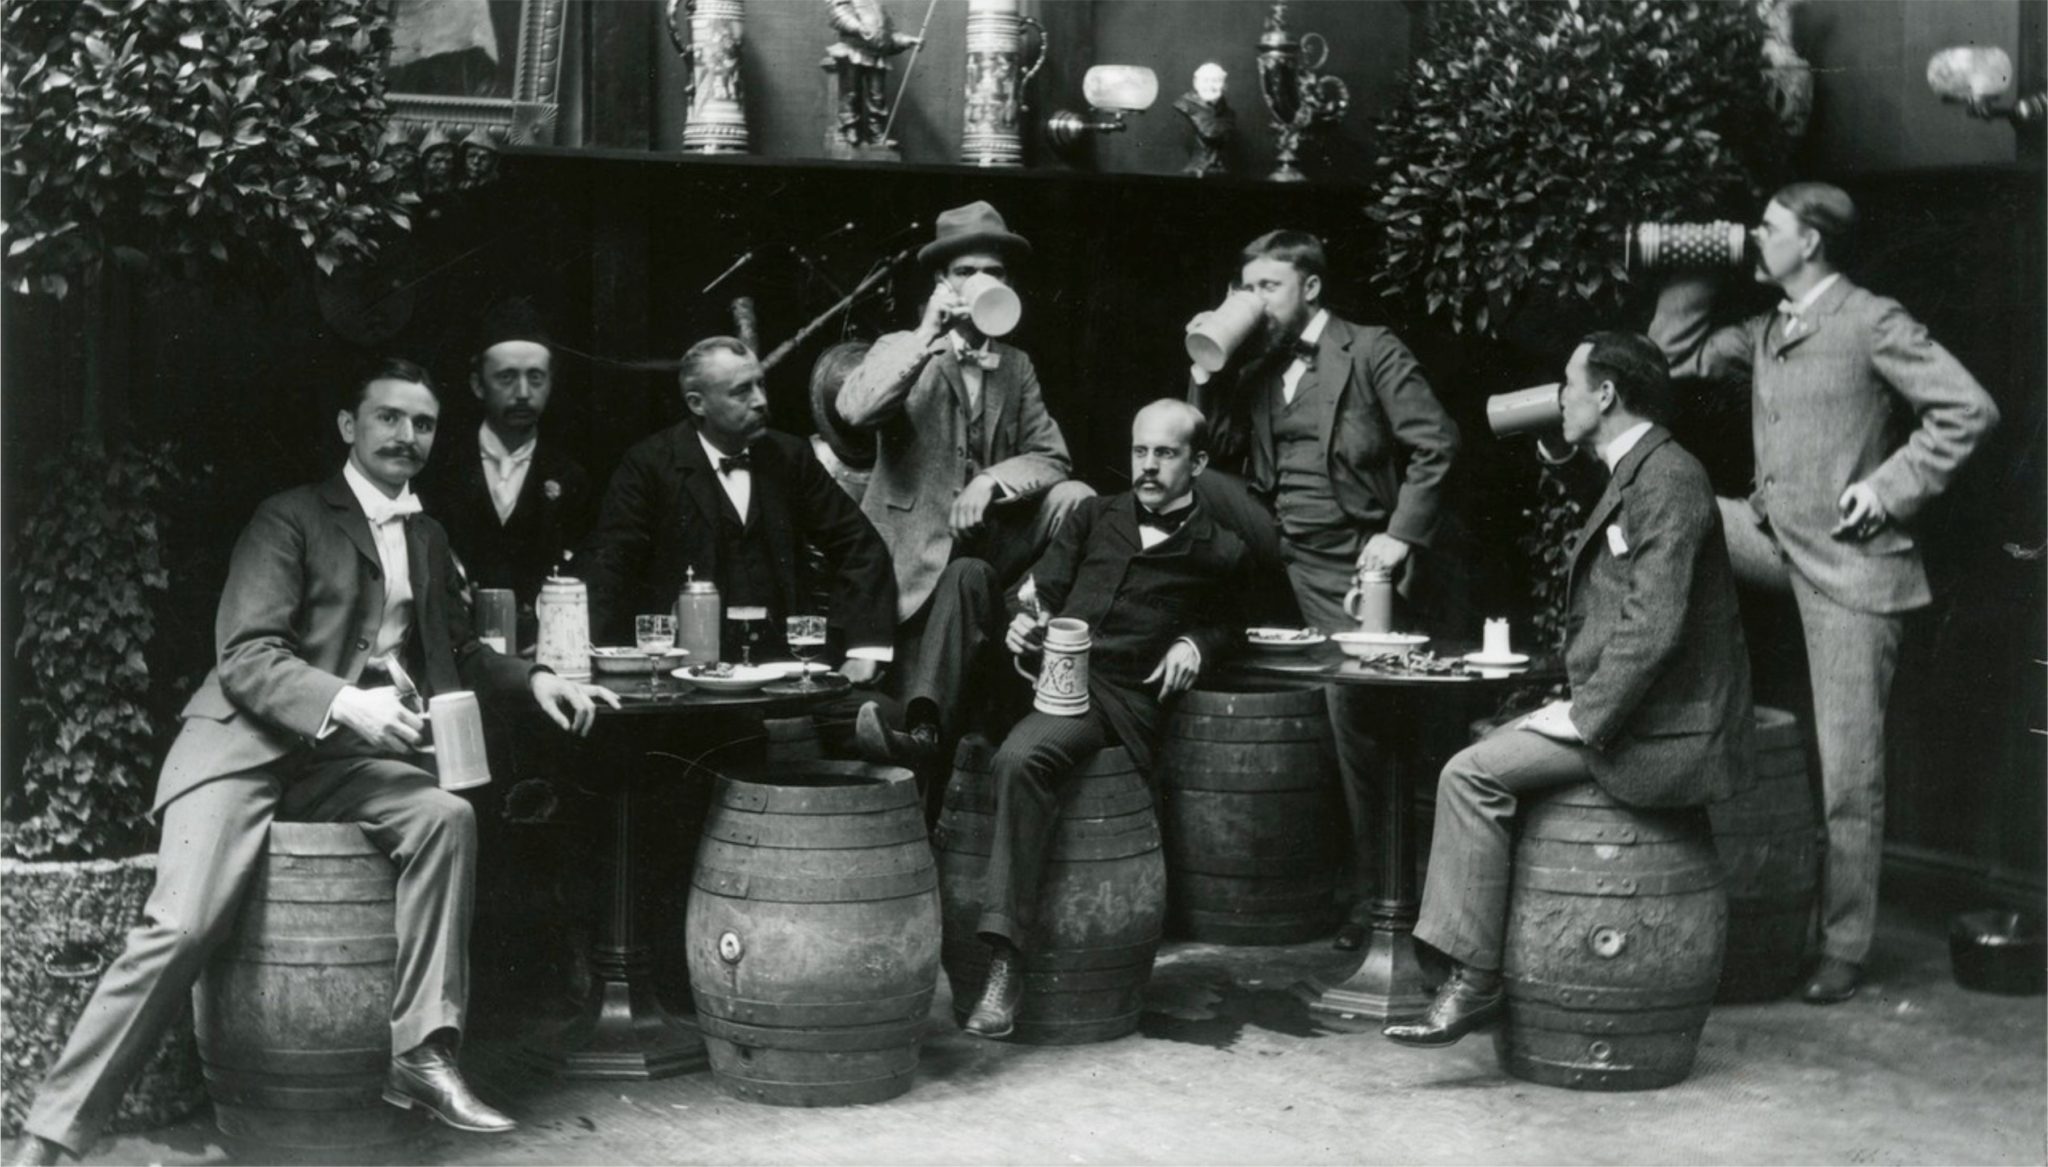 Первая пивная. Пивоварня в Англии 19 век. Бутлегеры Нассау. Трактир 19 века в Англии. Портер (пиво) 19 века.